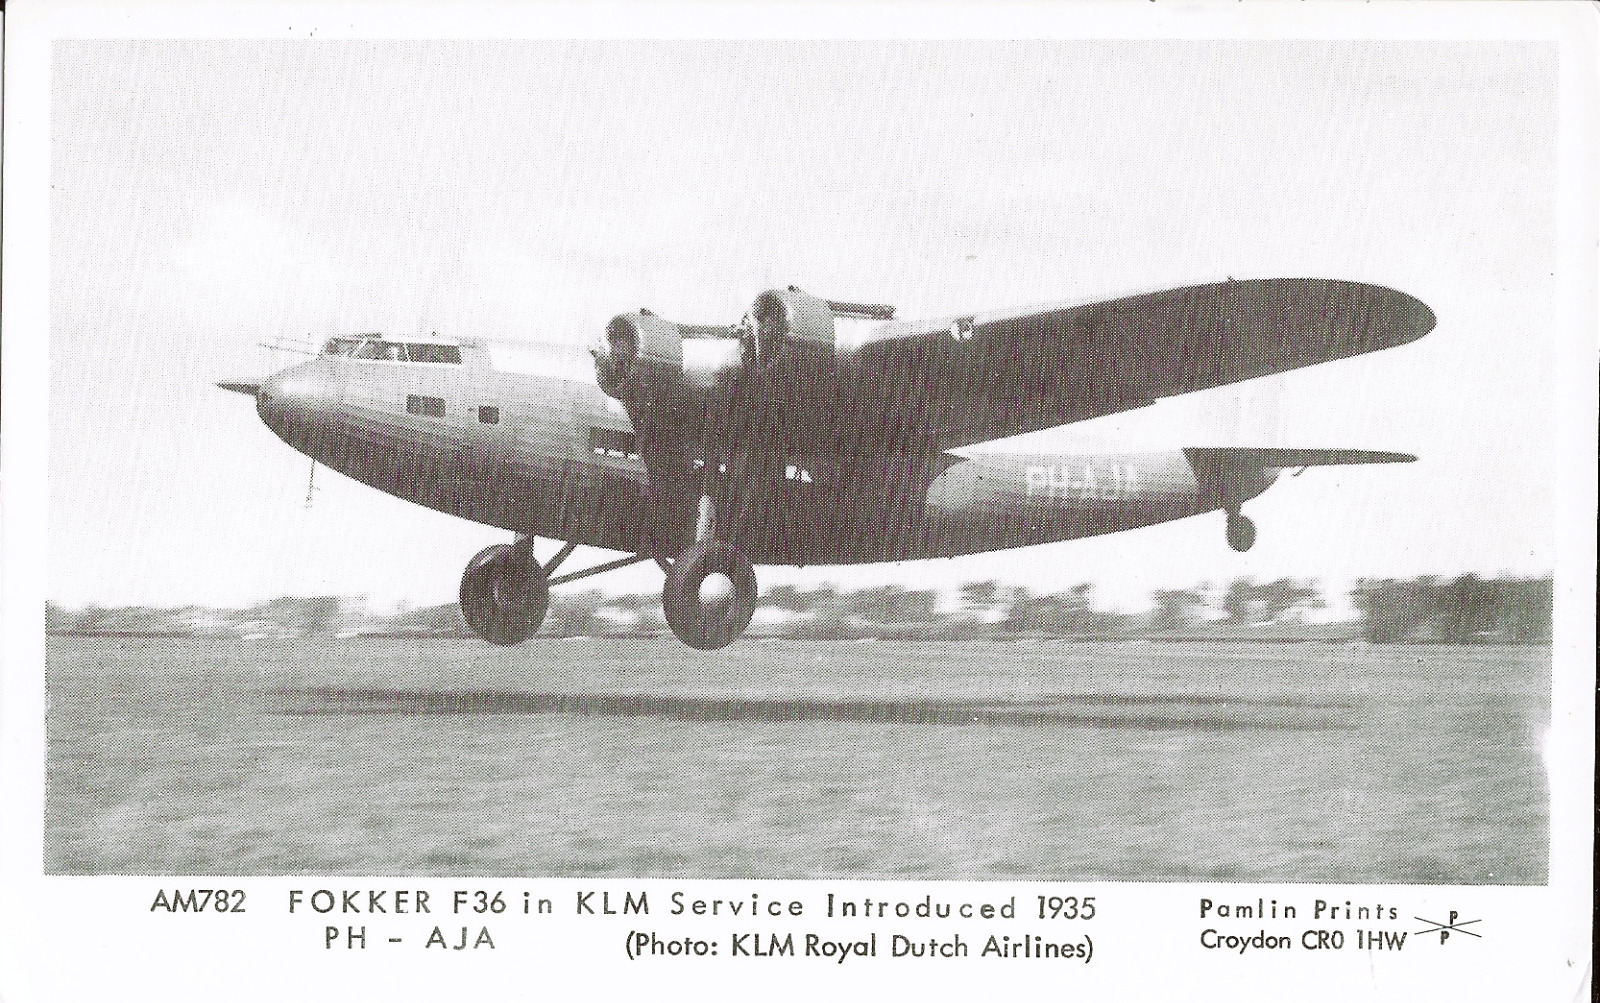 KLM Postcard, FOKKER F36 Introduced in 1935.